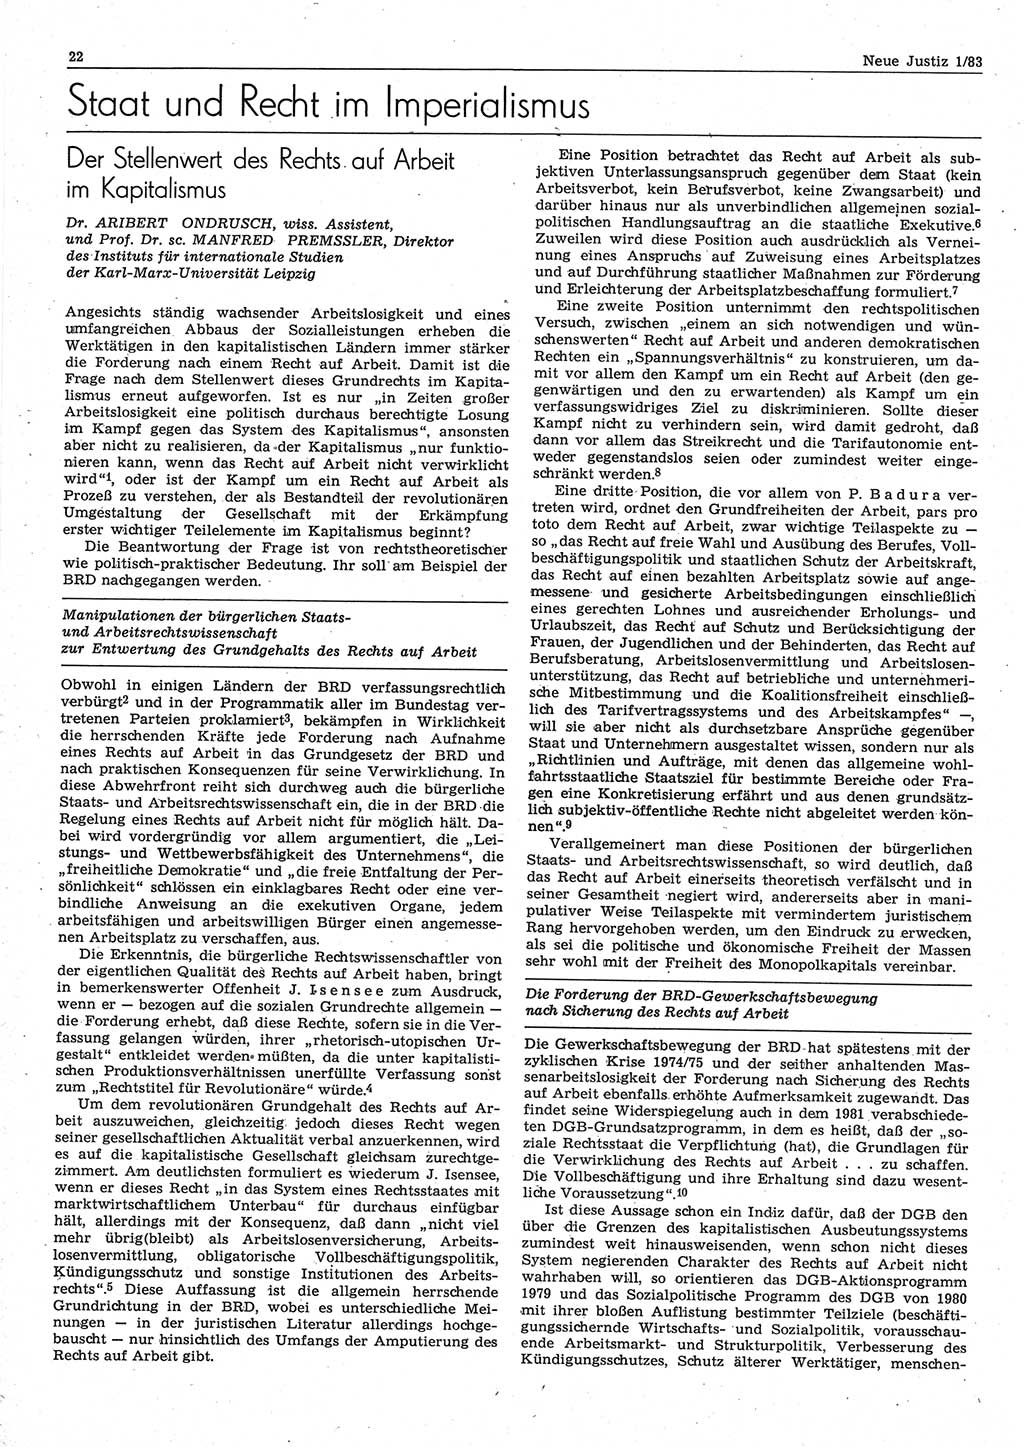 Neue Justiz (NJ), Zeitschrift für sozialistisches Recht und Gesetzlichkeit [Deutsche Demokratische Republik (DDR)], 37. Jahrgang 1983, Seite 22 (NJ DDR 1983, S. 22)